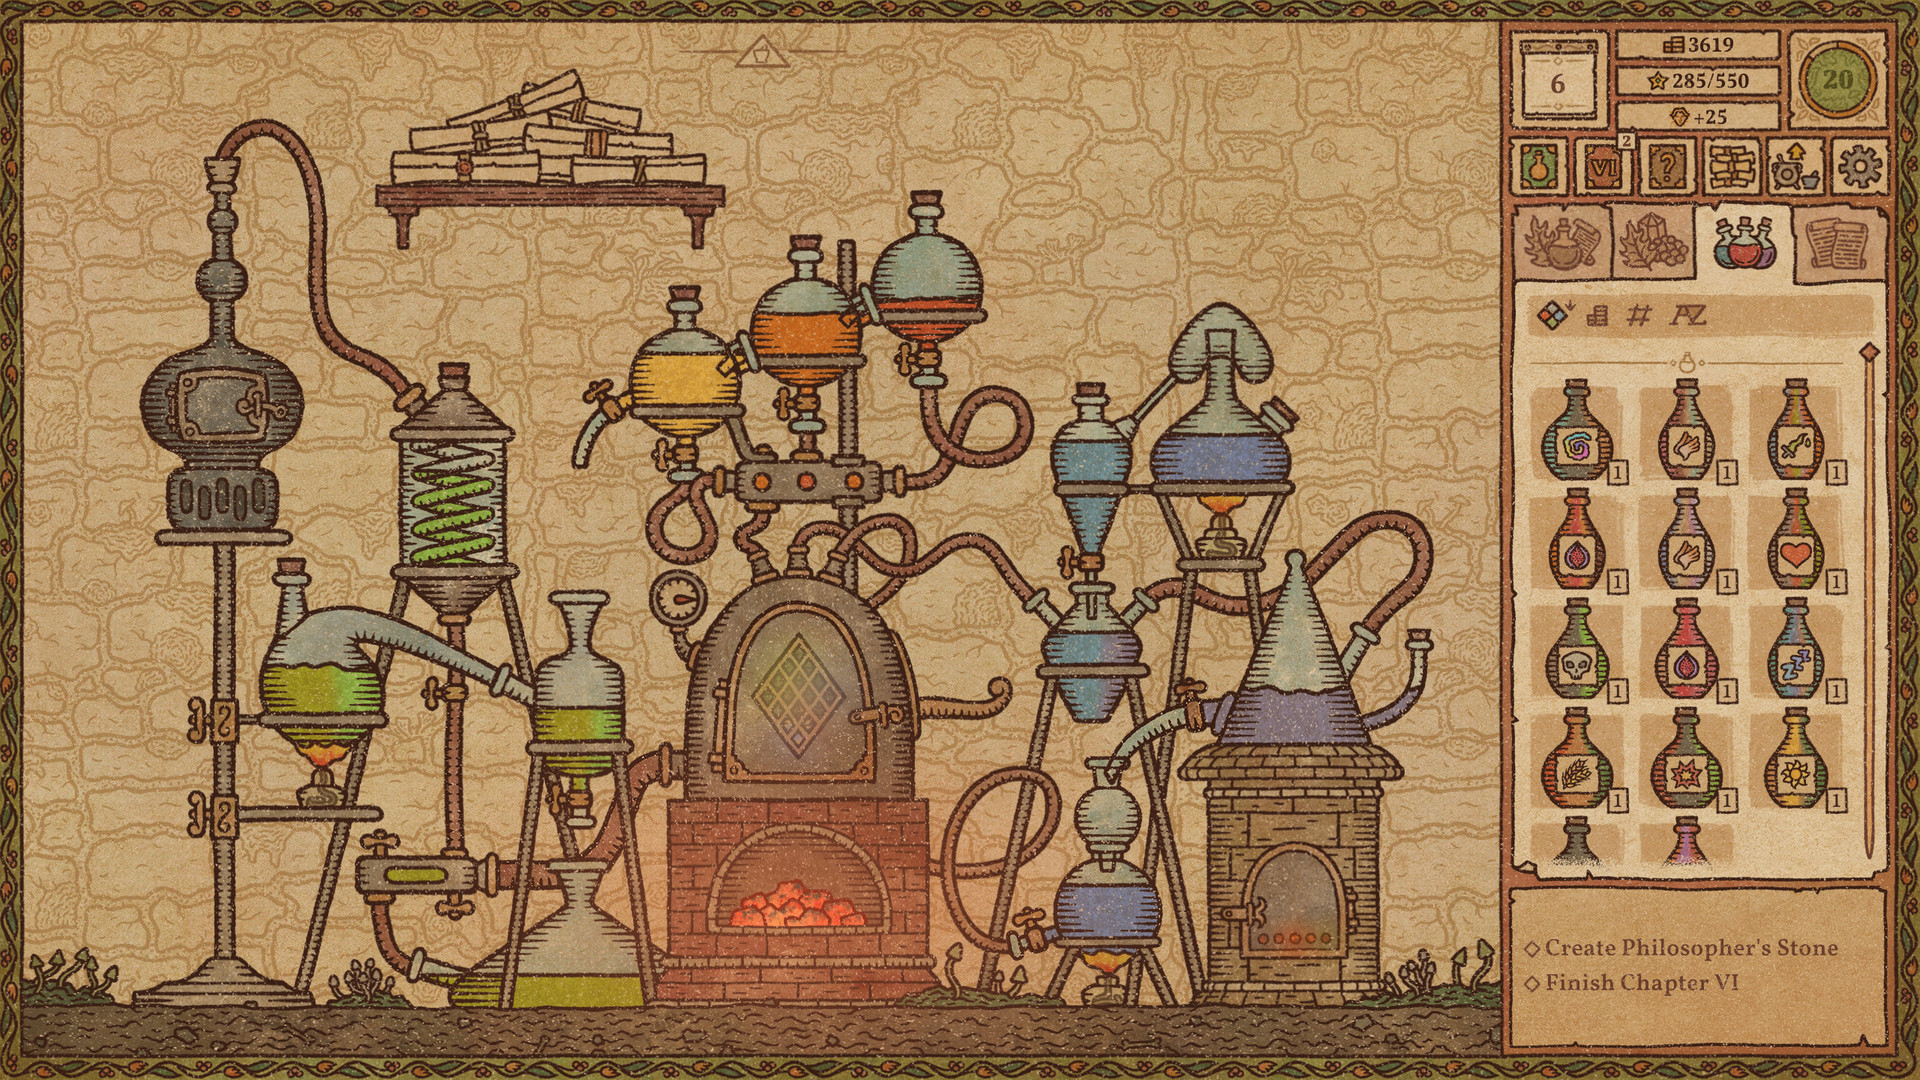 Potion Craft: Alchemist Simulator Steam Altergift